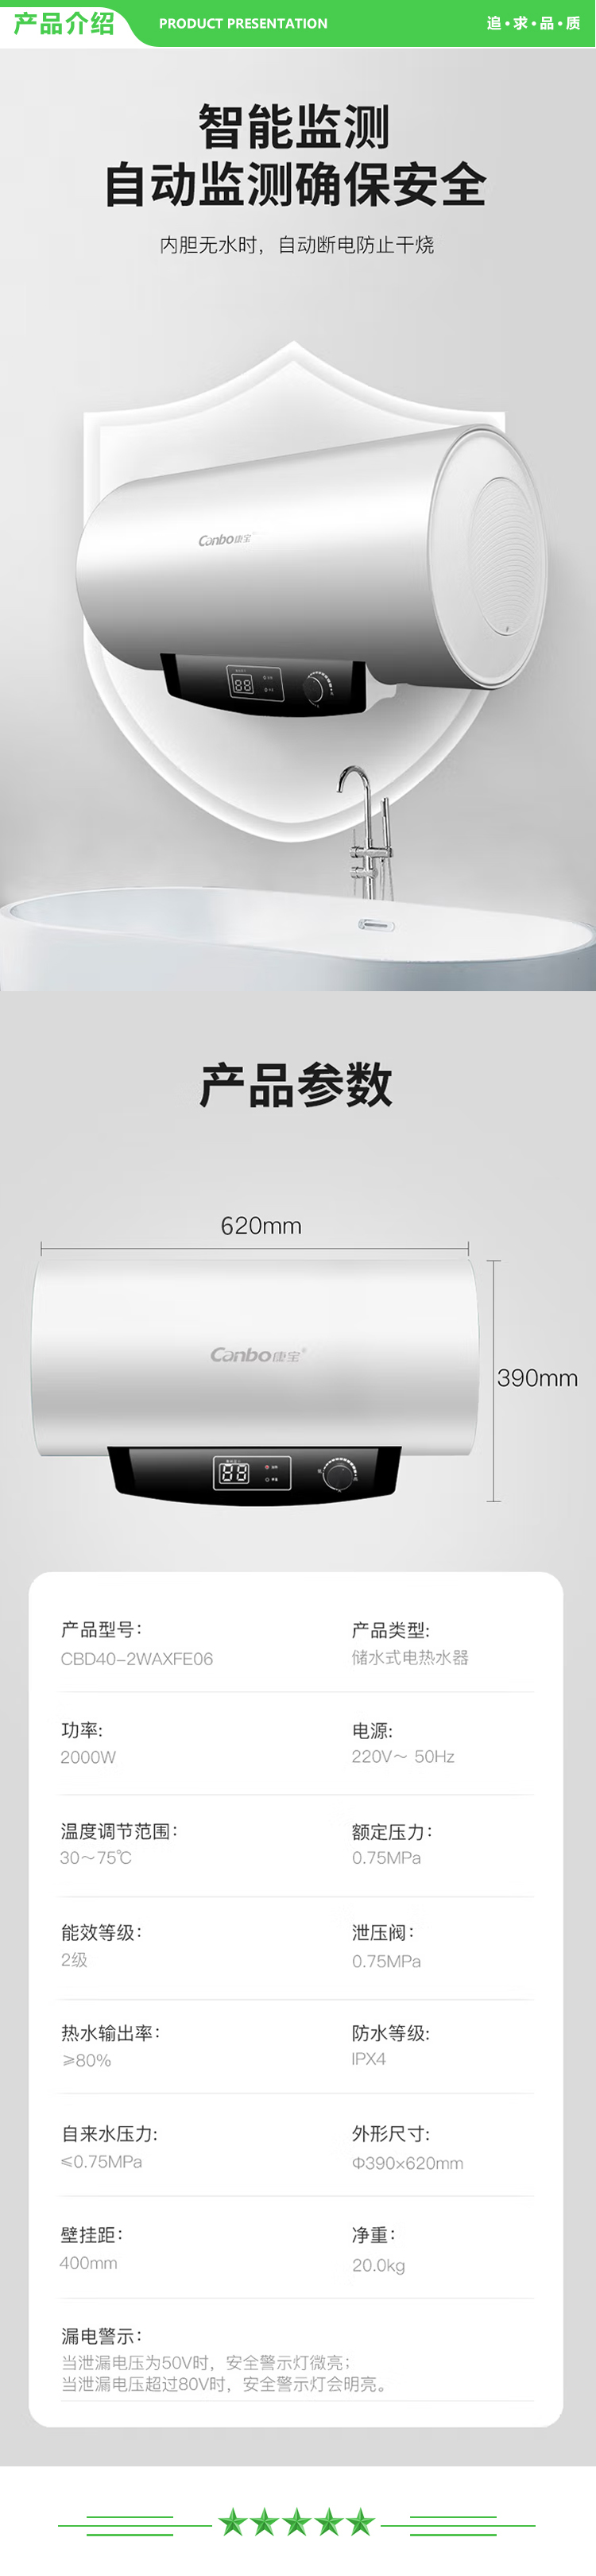 康宝 Canbo CBD40-2WAXFE06 储水式电热水器 40升大容量2000w大功率 不锈钢 家用热水器经济节能保温 .jpg